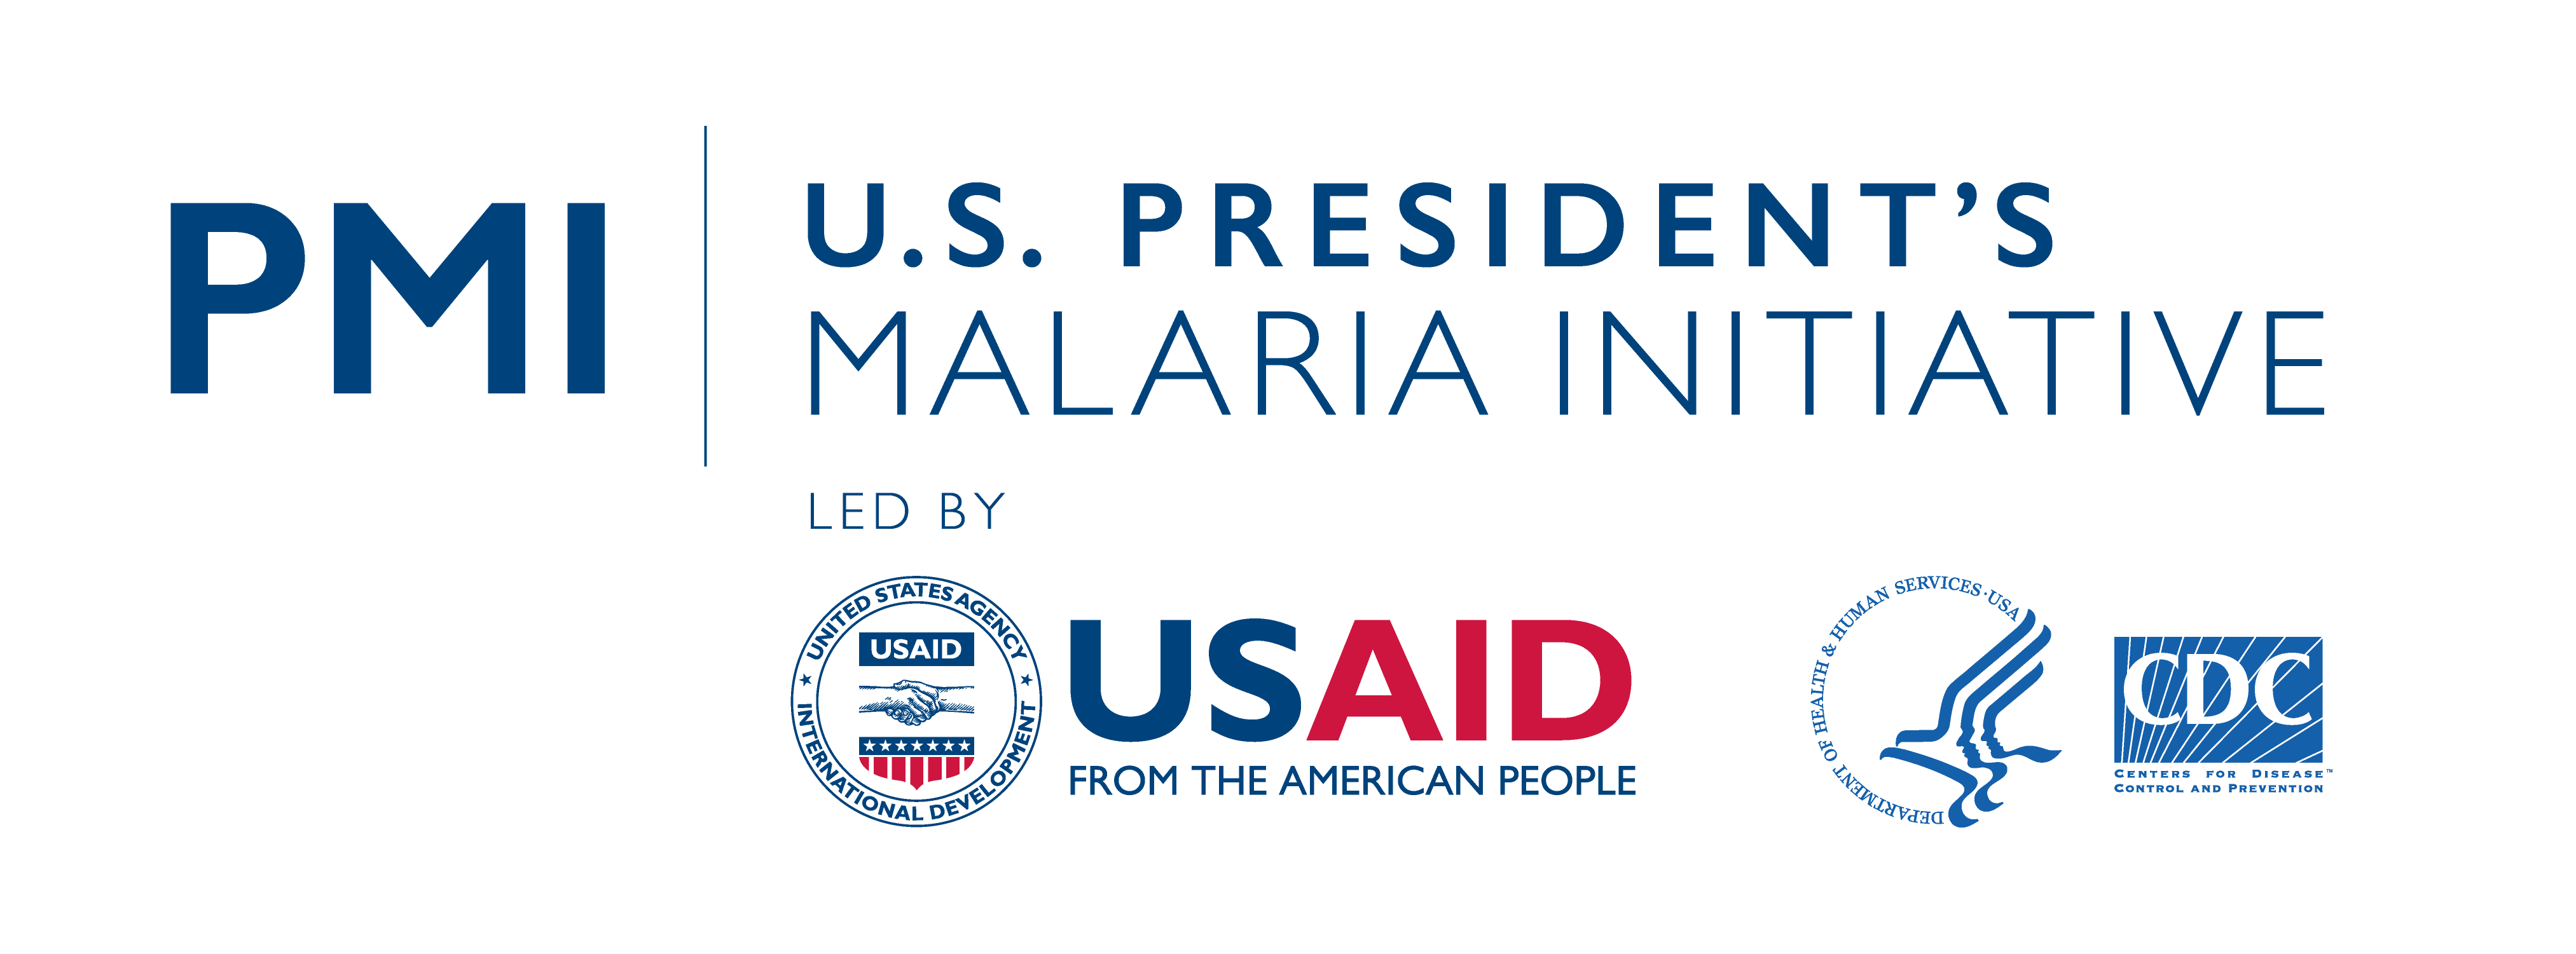 Logotipo da President's Malaria Initiative